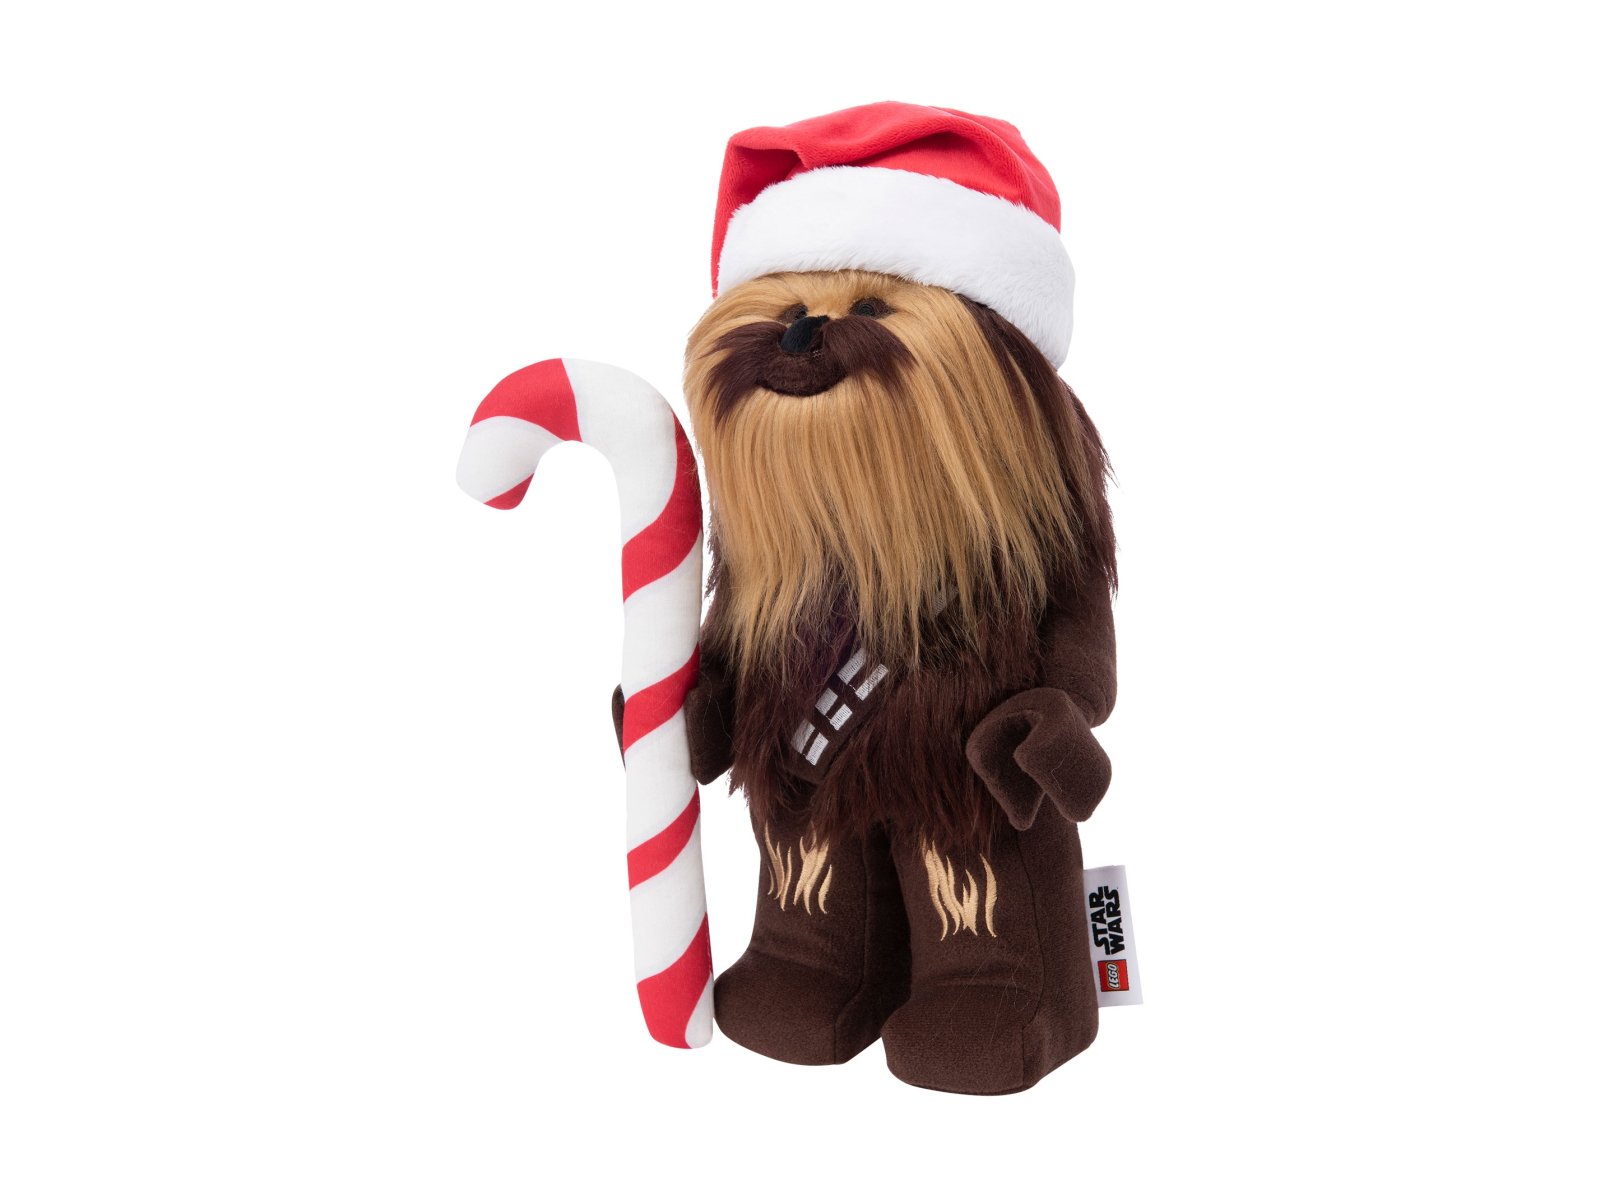 LEGO Star Wars Świąteczny pluszowy Chewbacca™ 5007464